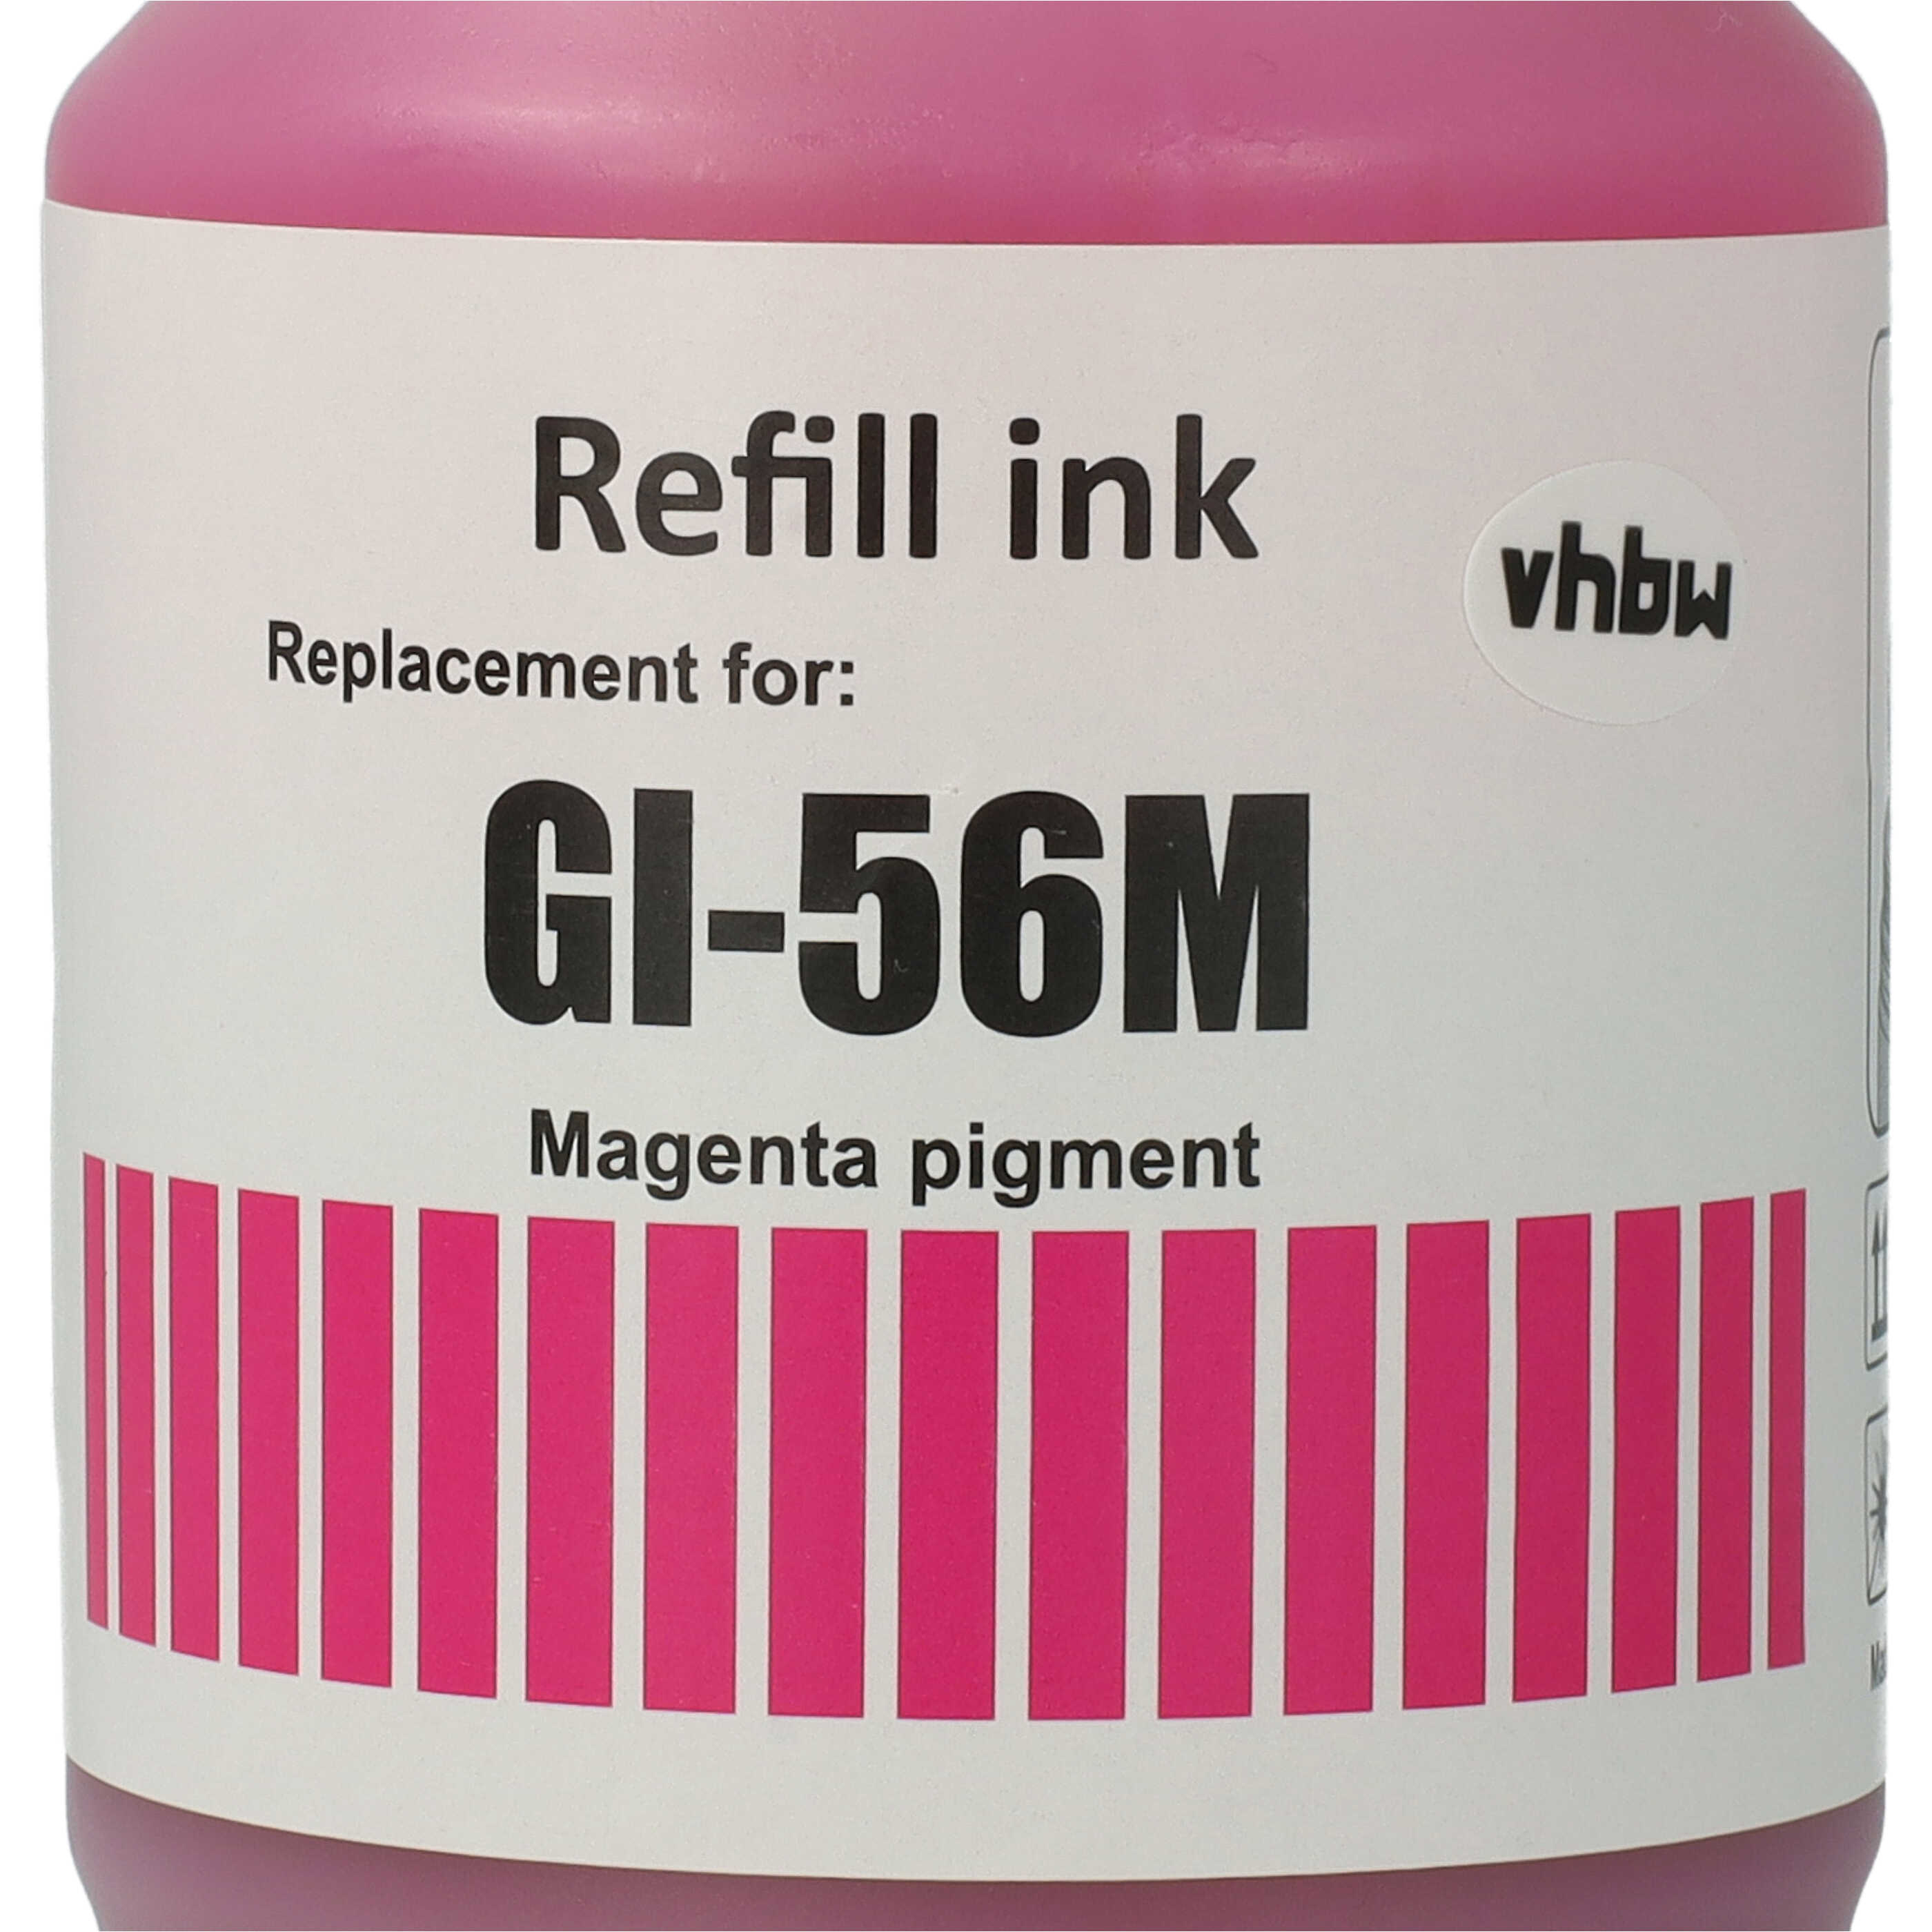 Nachfülltinte Magenta als Ersatz für Canon 4431C001, GI-56M für Canon Drucker - Pigmentiert, 135ml